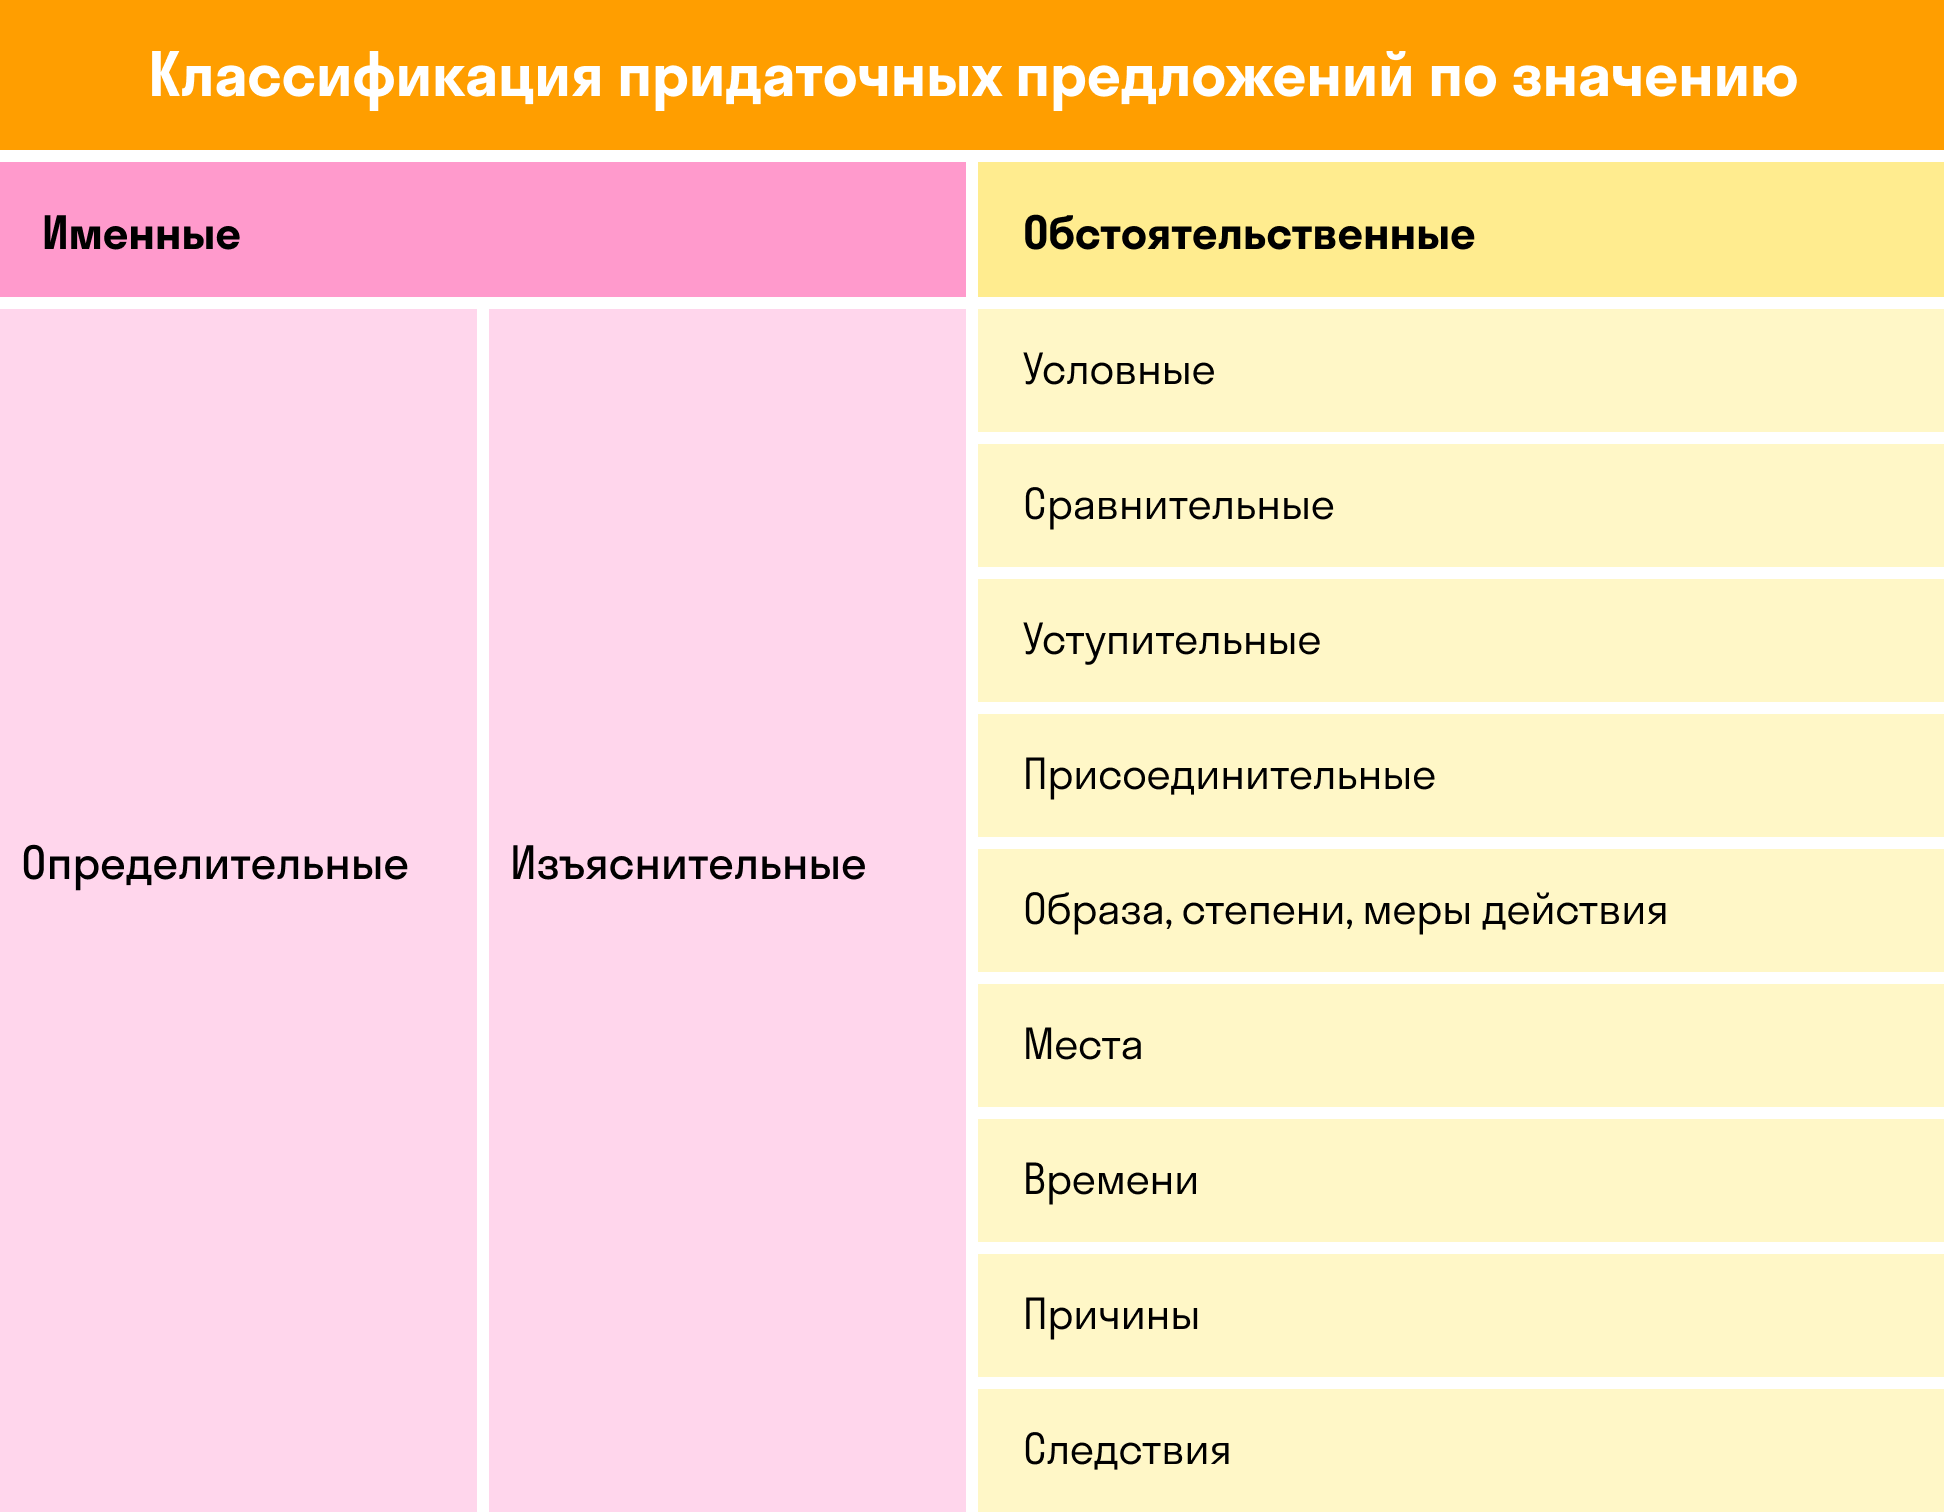 Классификация придаточных предложений | skysmart.ru